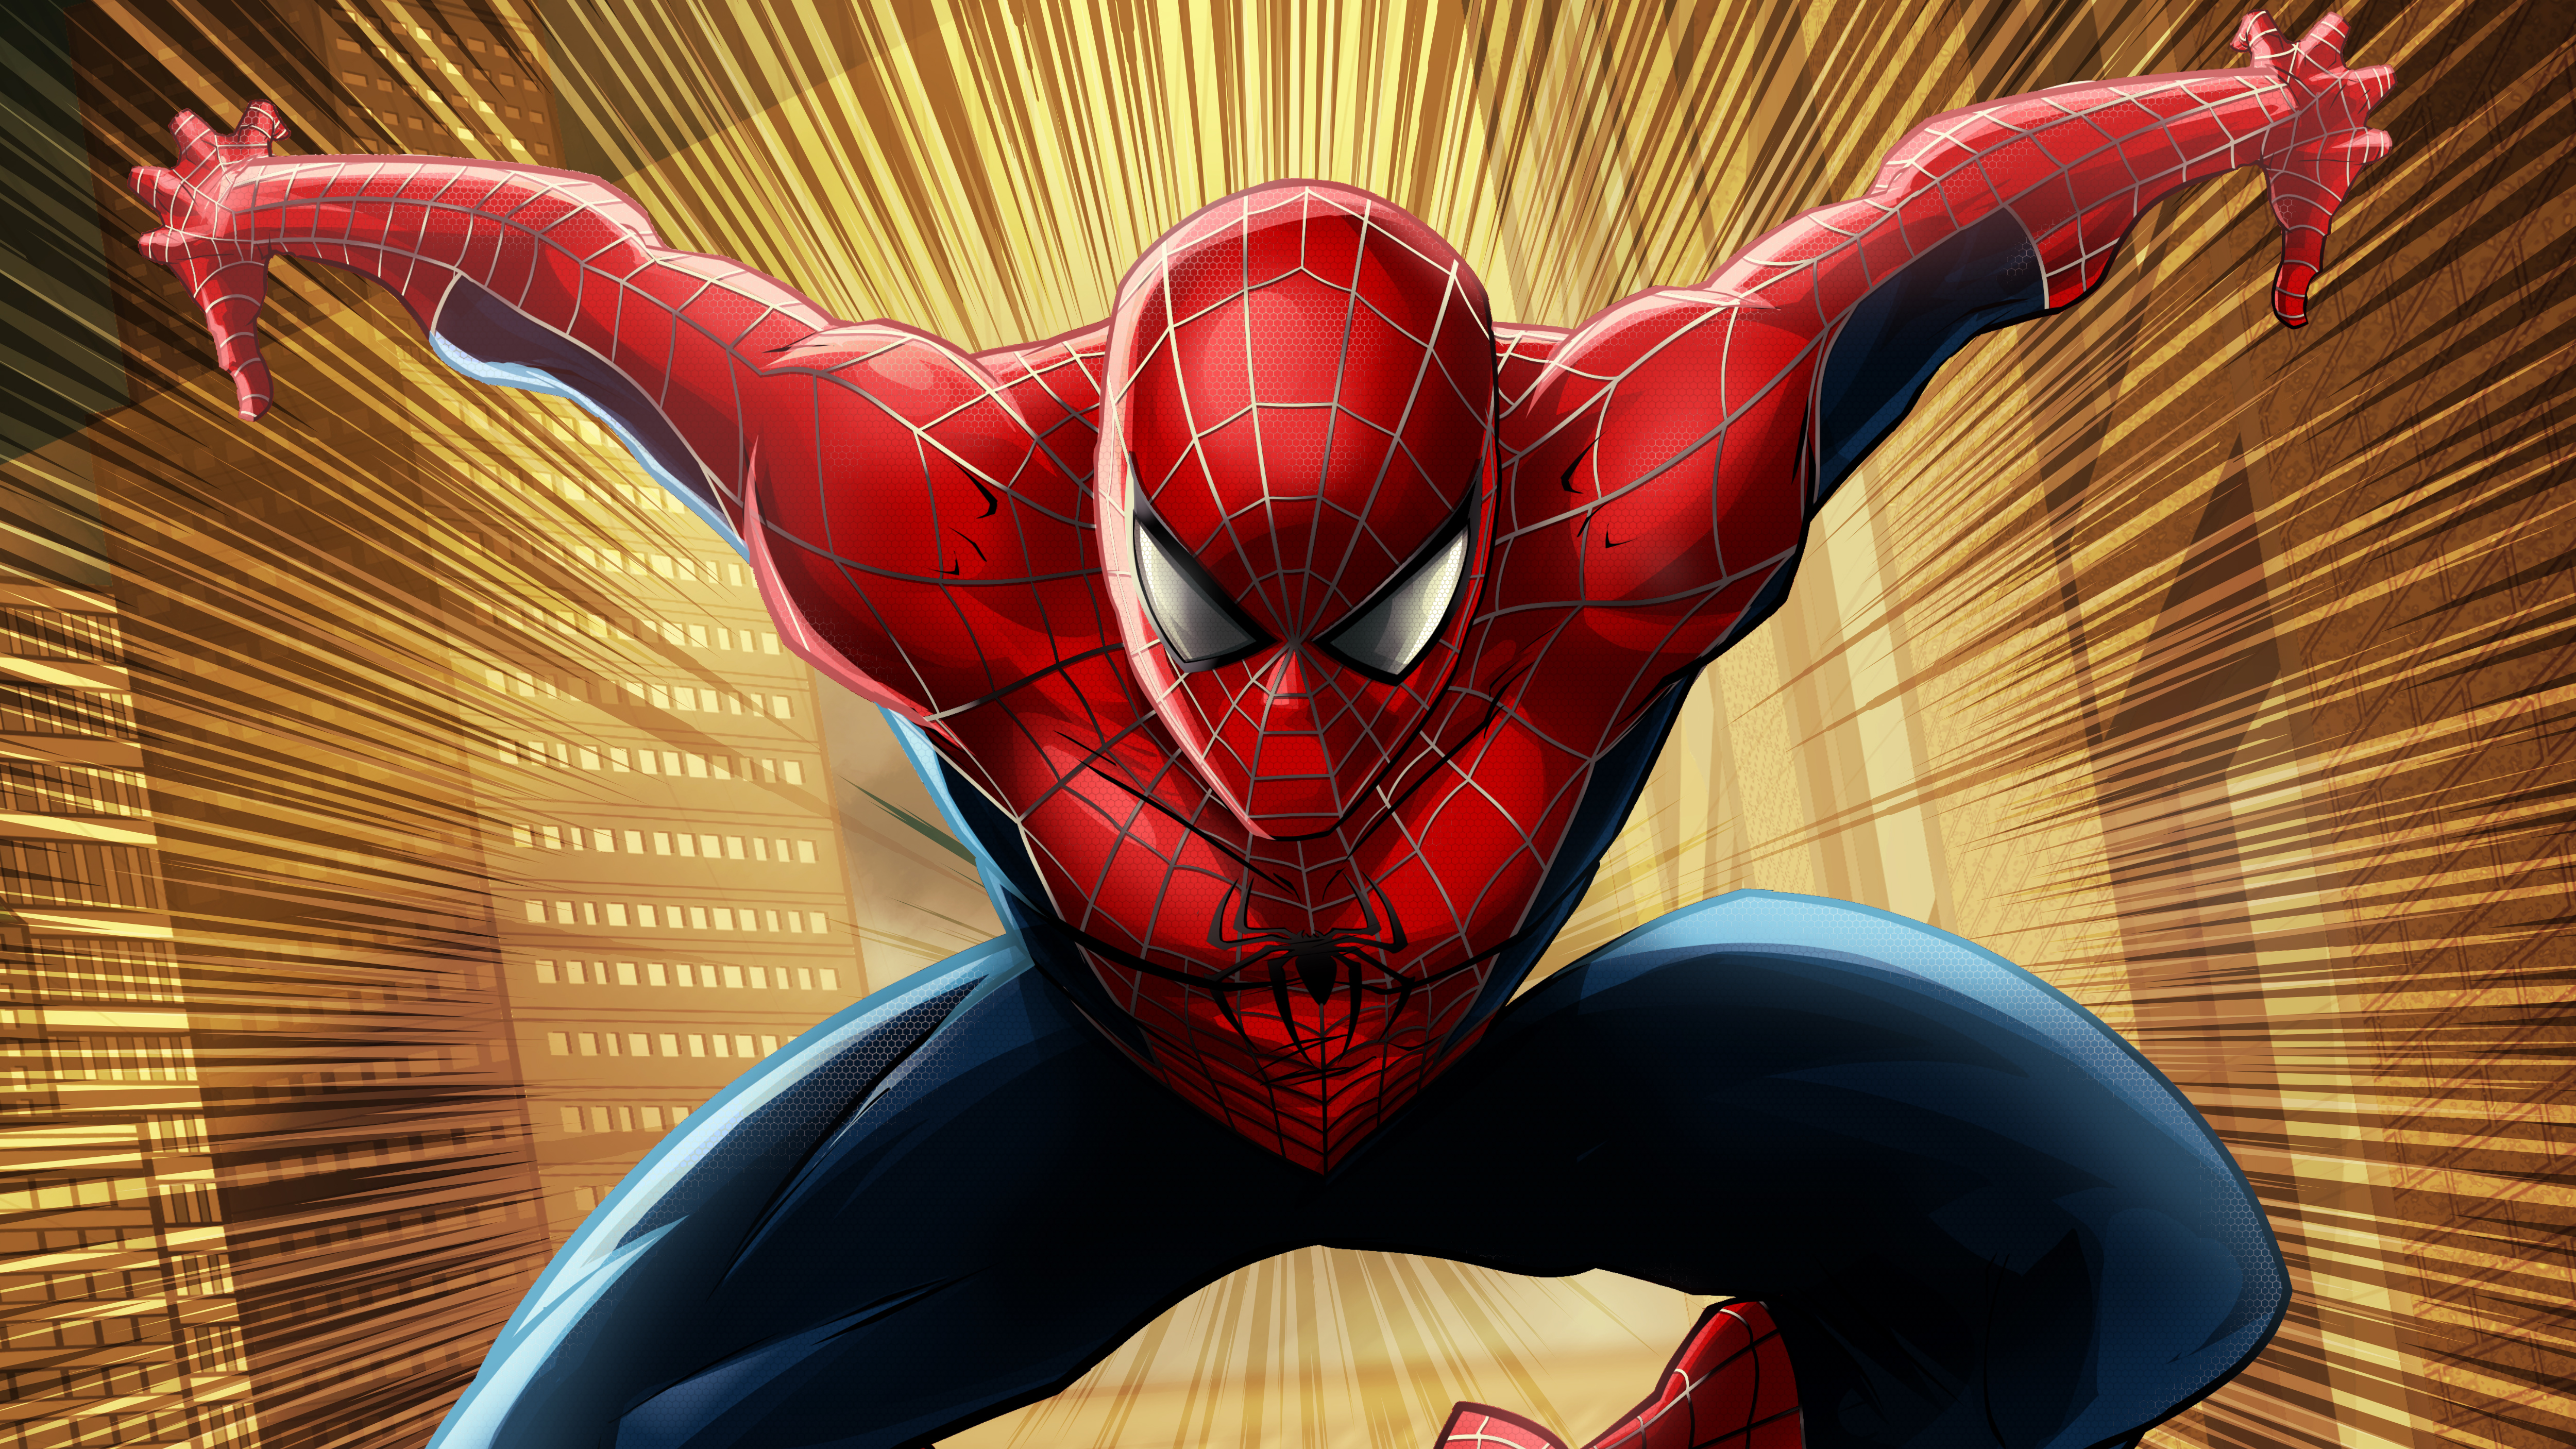 Spiderman Superheroes Artwork Artist HD 4k 5k Mocah